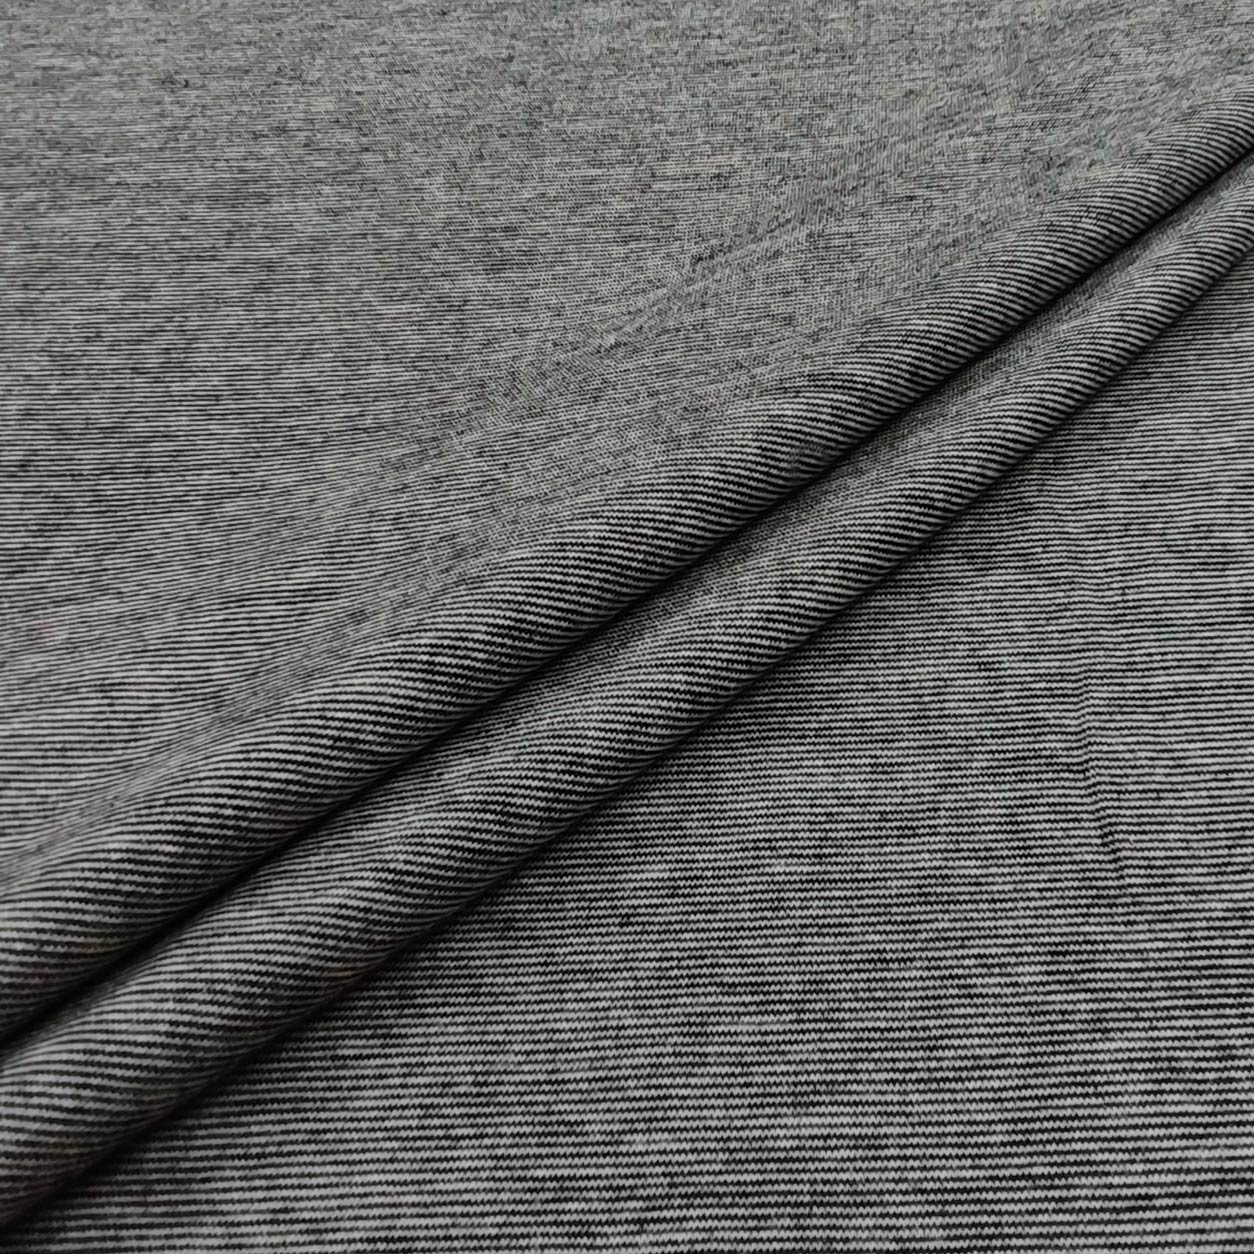 tessuto-jersey-righe-sottili-nero-grigio